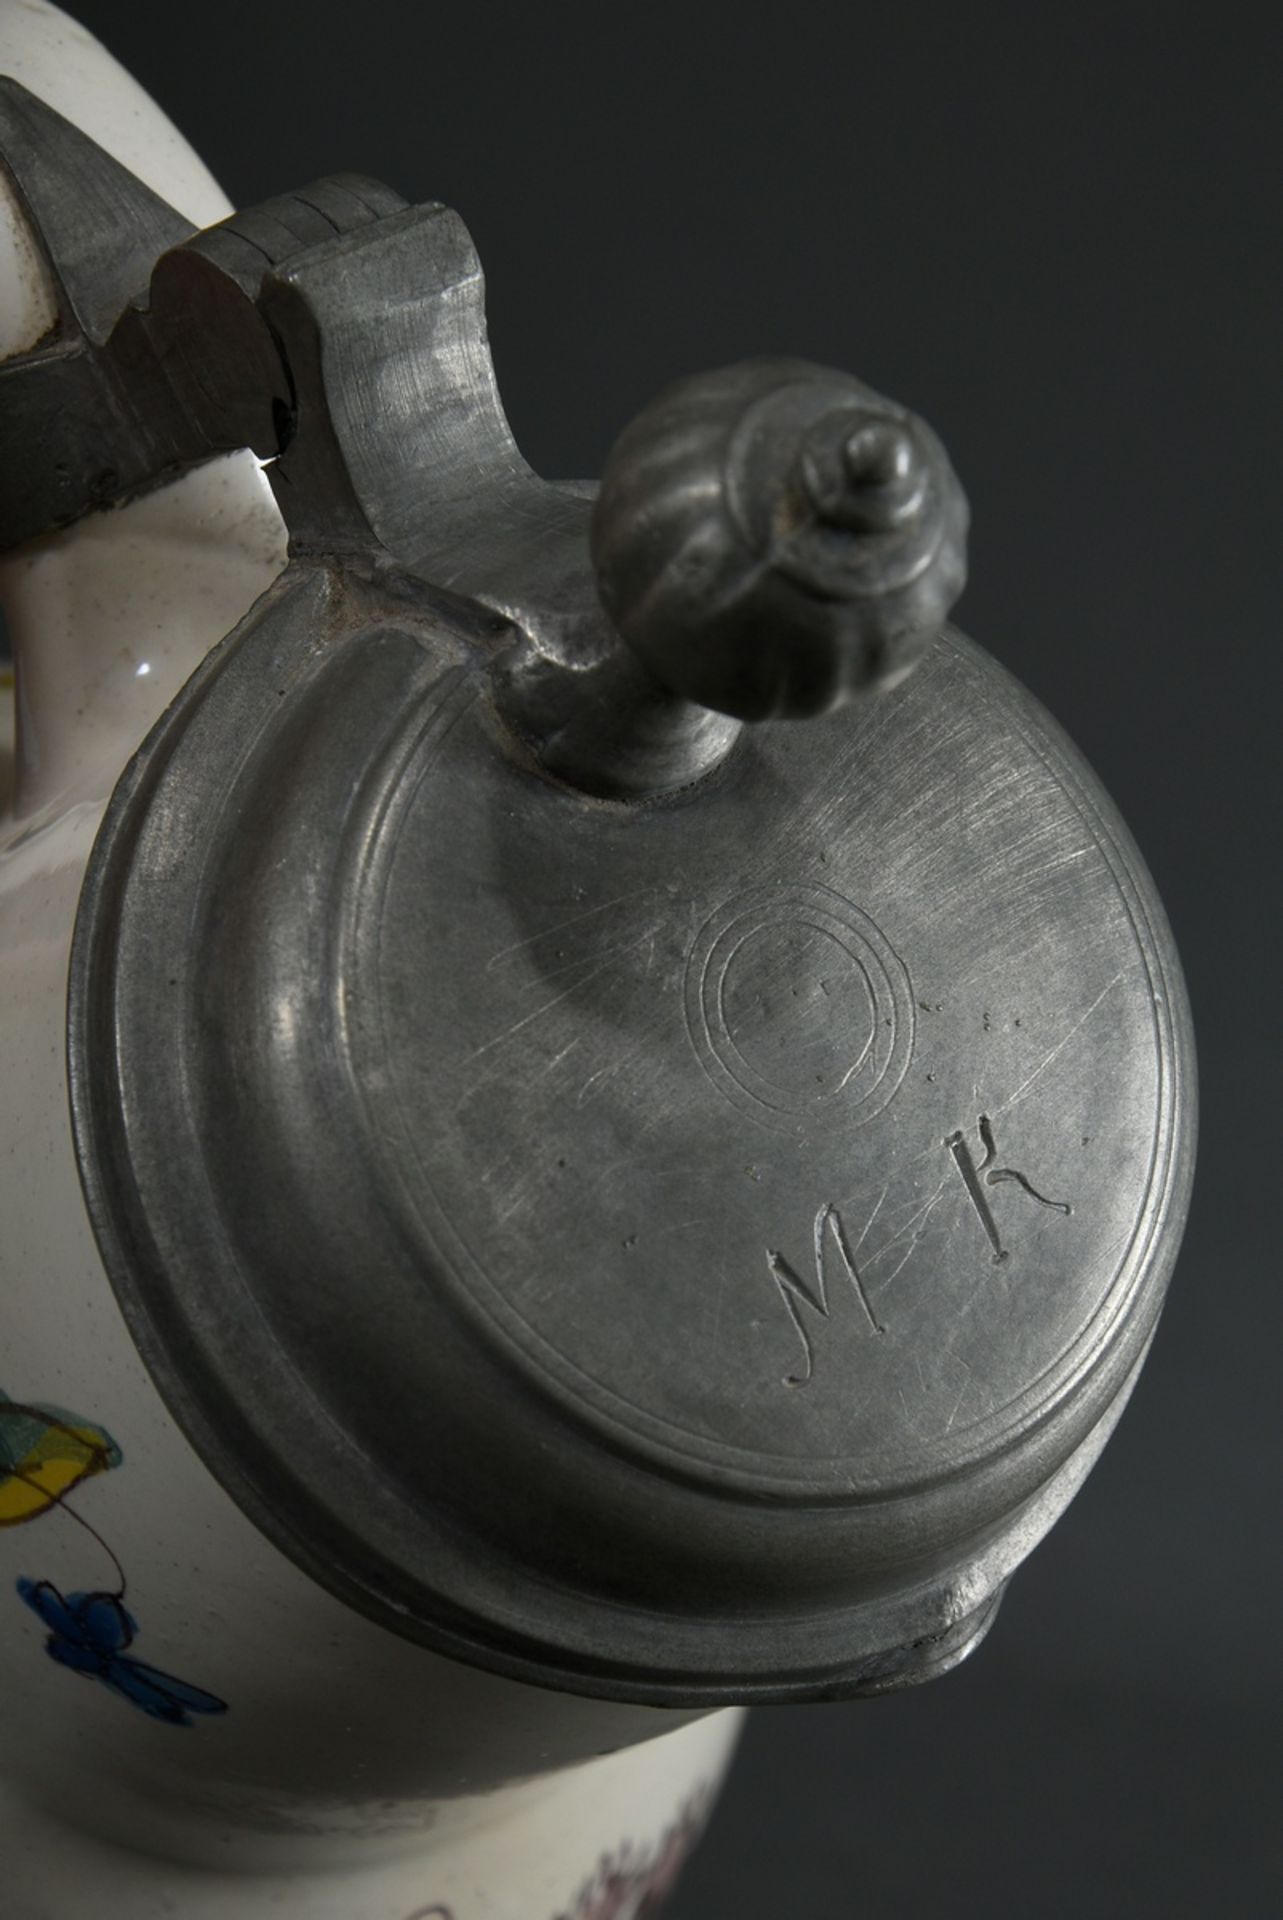 Ansbacher Birnkrug mit ovoidem Korpus und eingezogener Schulter sowie breitem Hals mit passigem Zin - Bild 5 aus 8